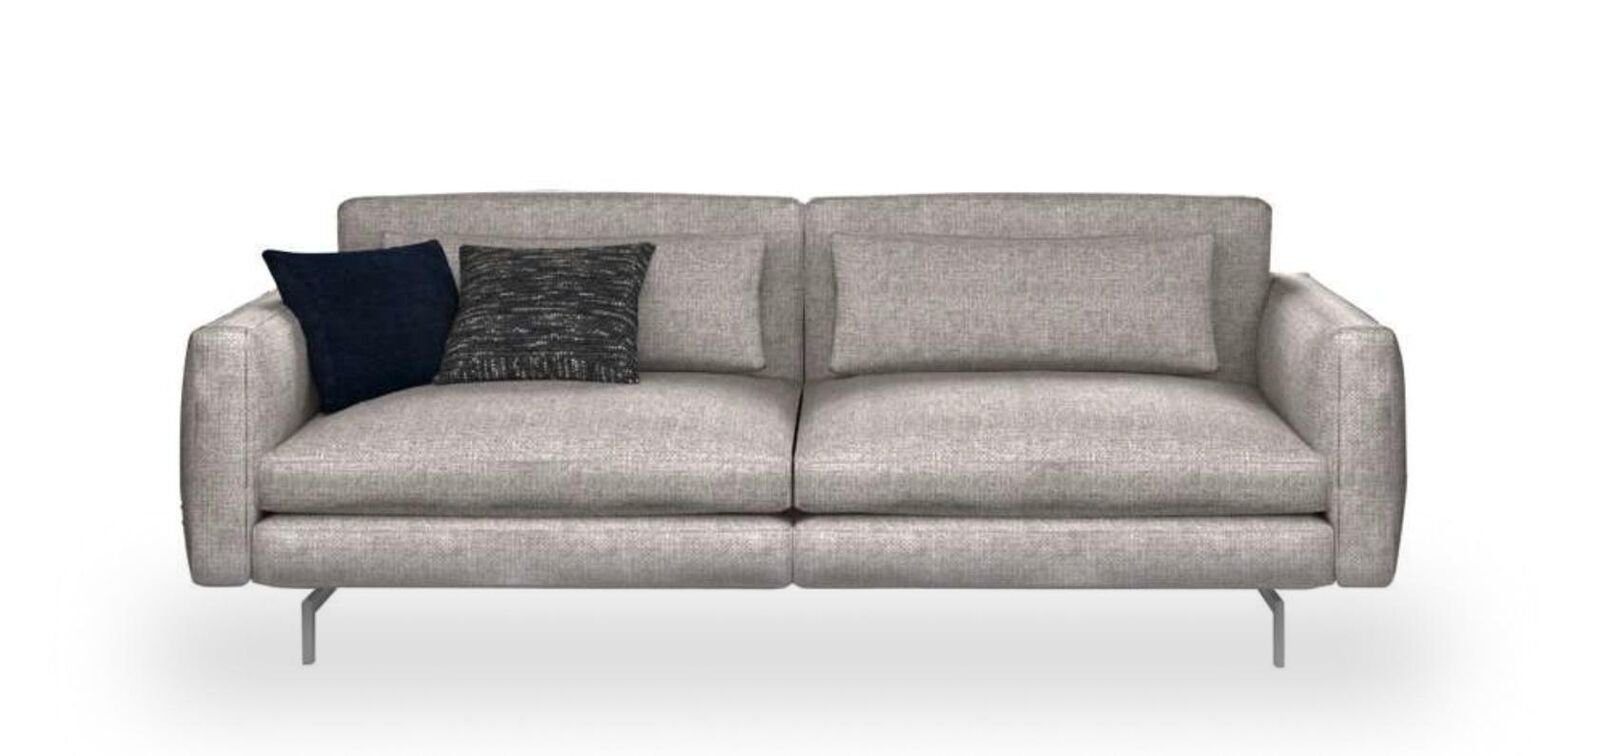 JVmoebel Sofa Dreisitzer Couch Moderne in Sofas, Teile, Europa Made Wohnzimmermöbel Textil 1